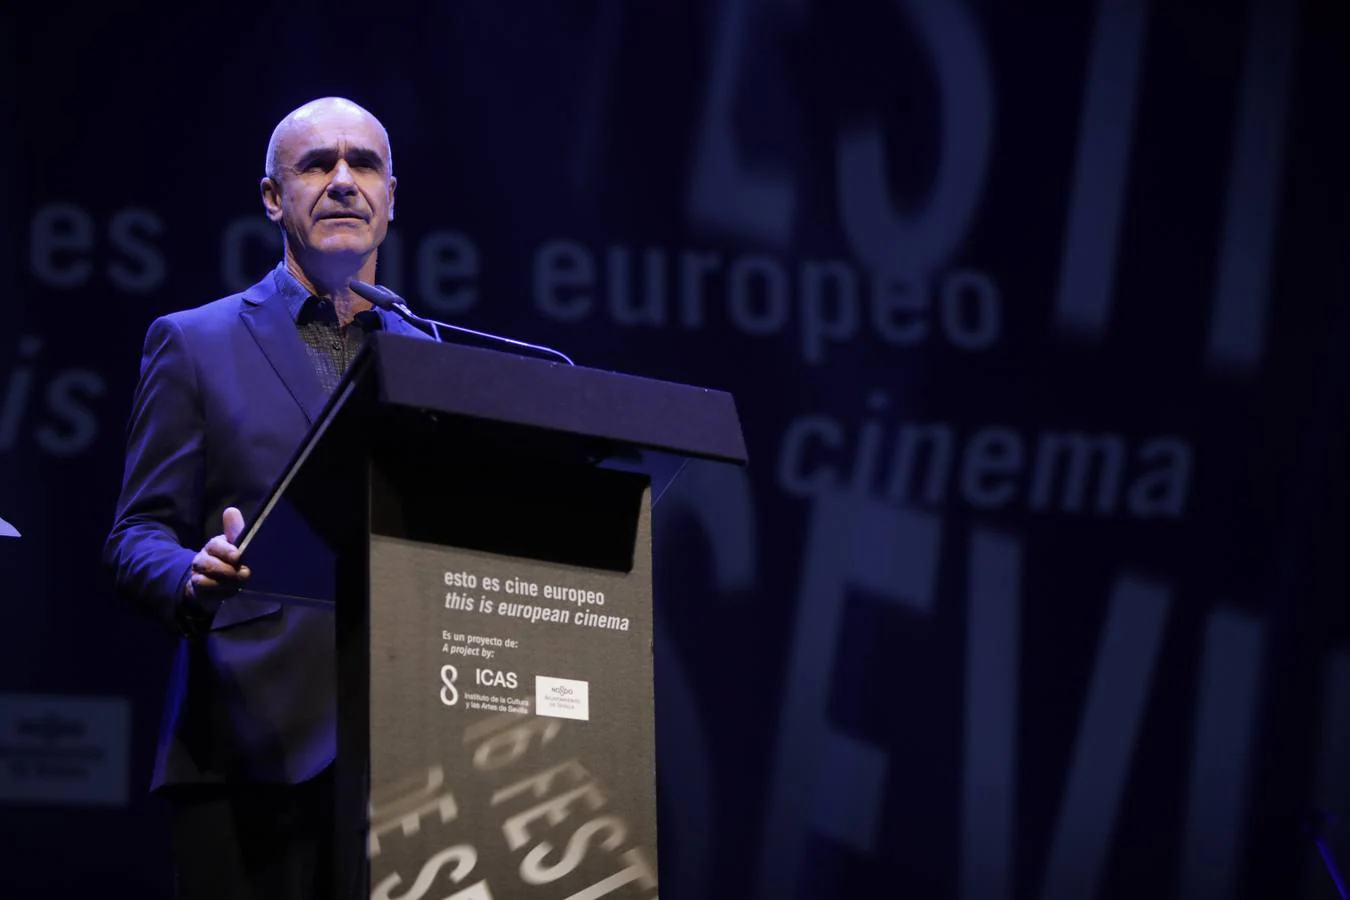 Gala de inauguración del Festival de Cine Europeo de Sevilla, en imágenes